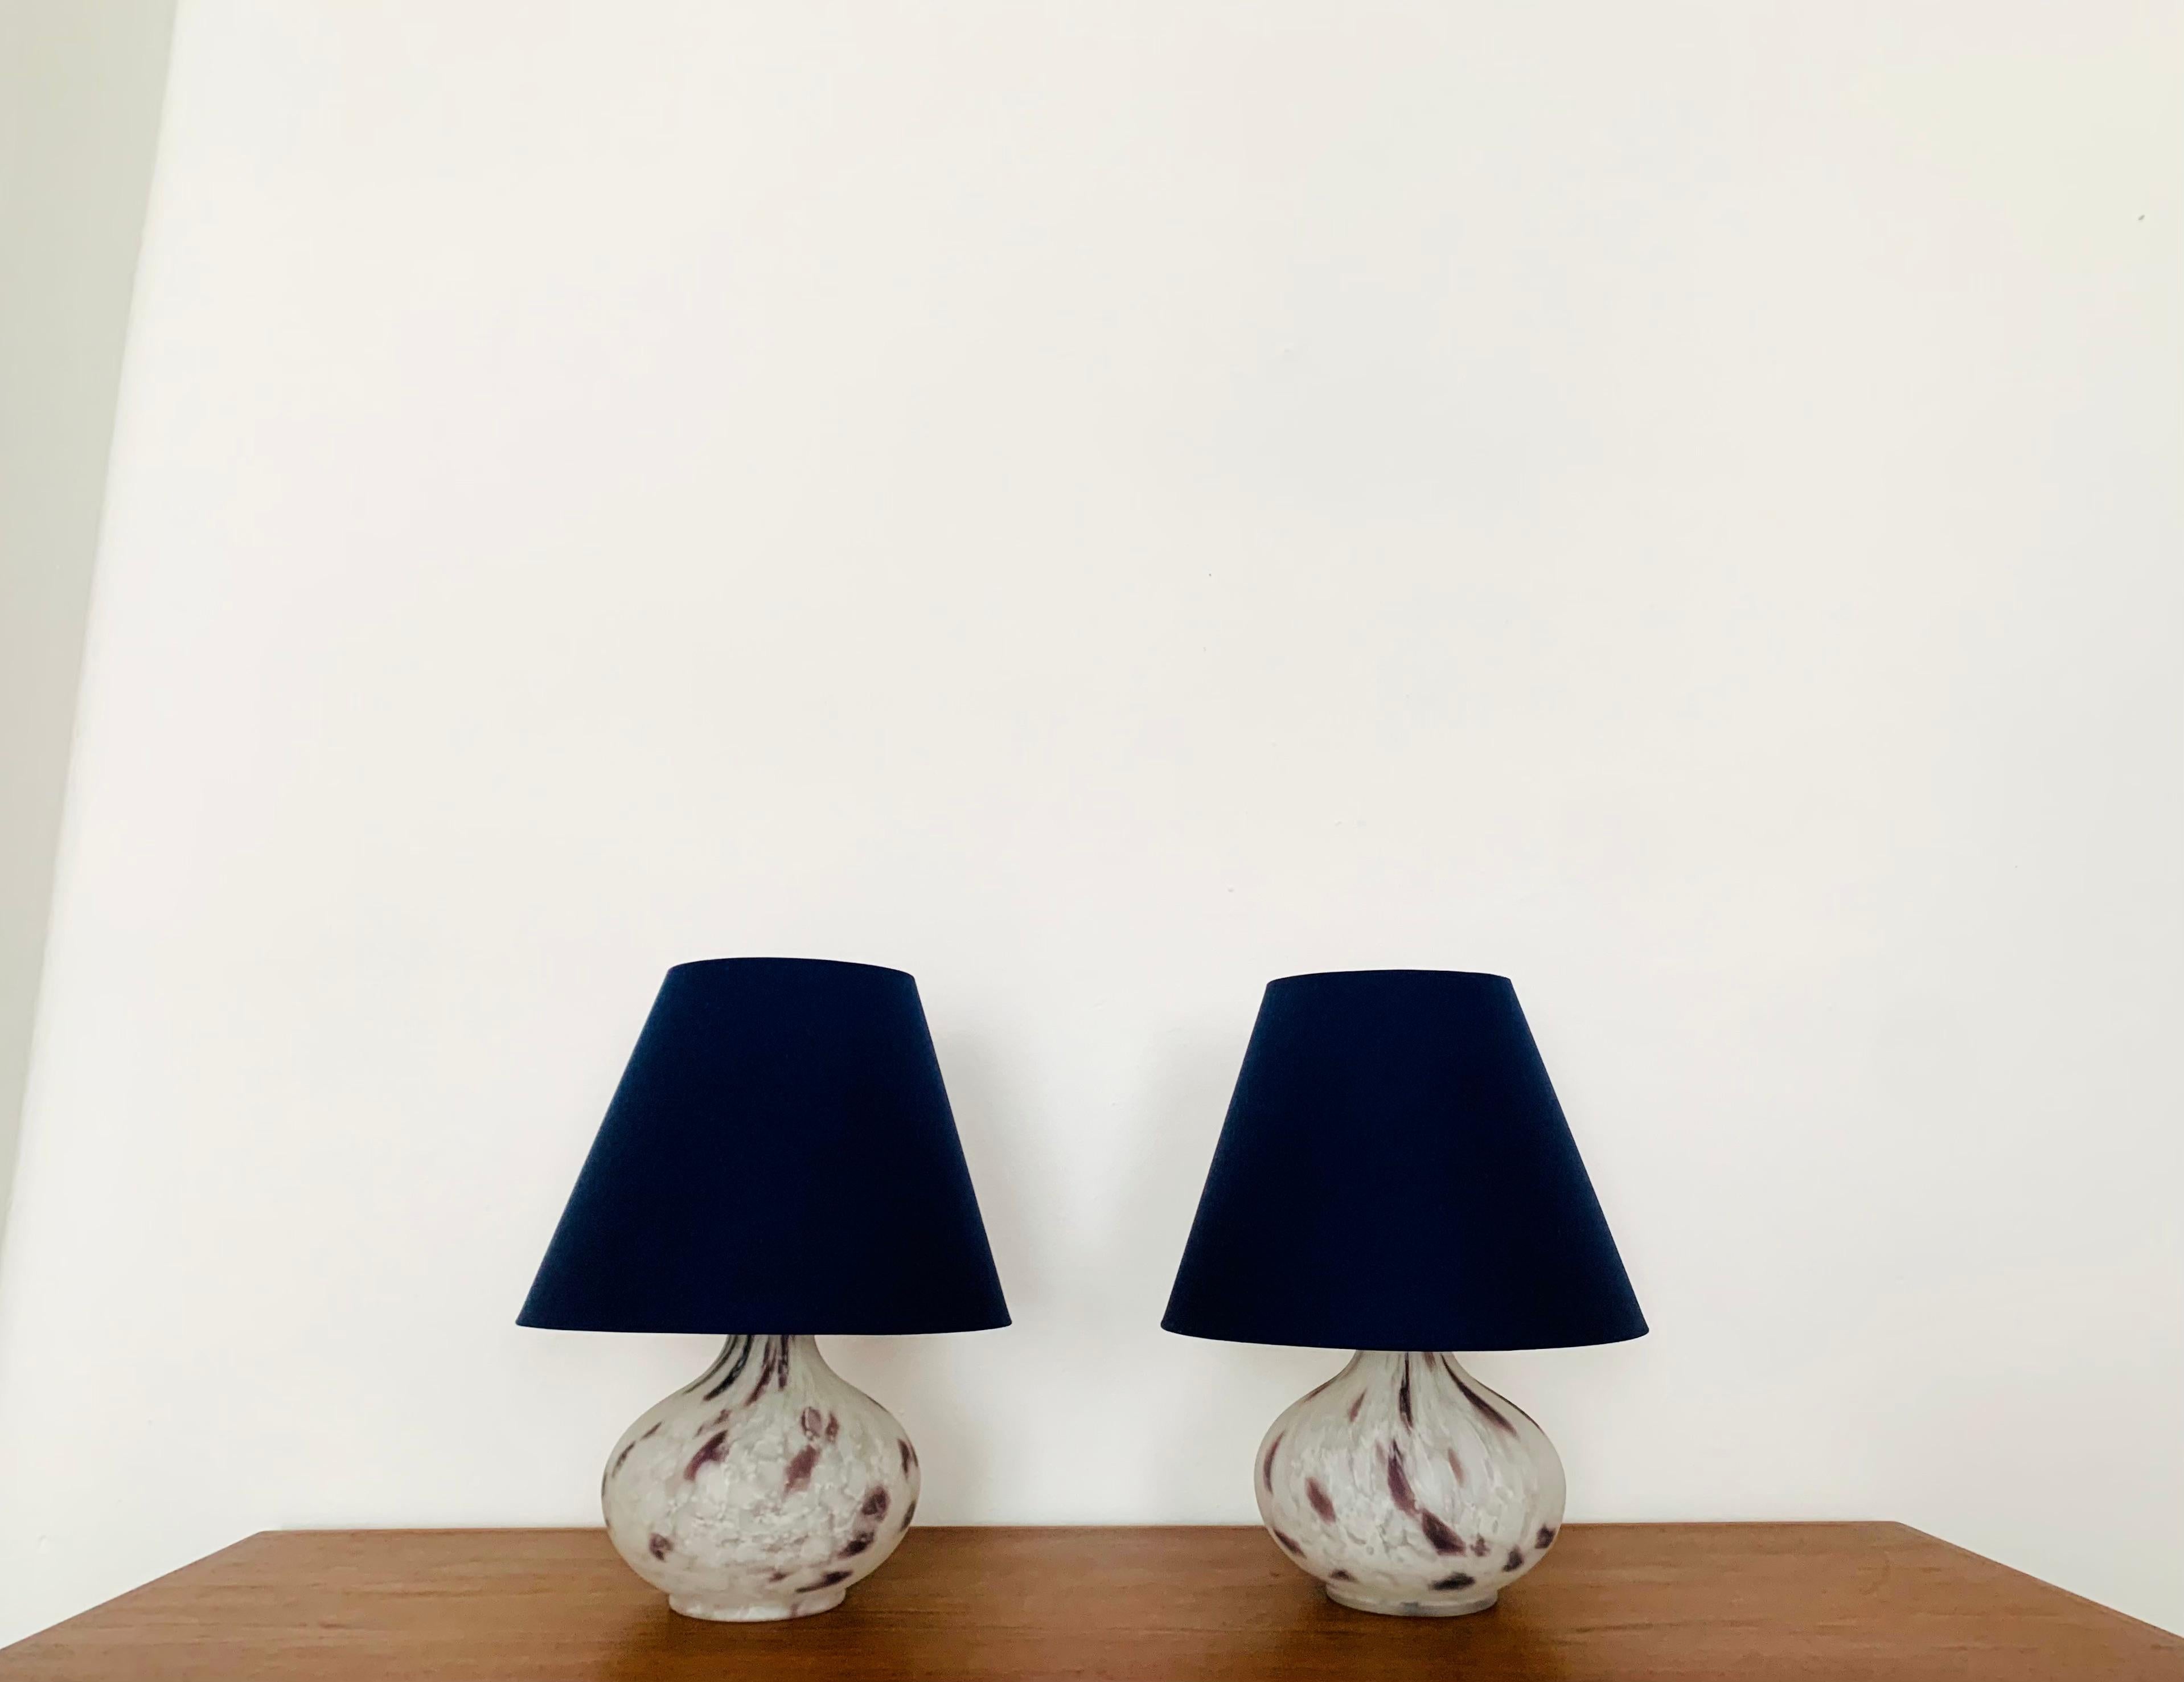 Très belles lampes de table en verre de Murano des années 1960.
Les lampes sont très élégantes et le design est un atout pour chaque pièce.
Une lumière agréable est créée.
Le socle de la lampe est éclairé.

Condit :

Très bon état vintage